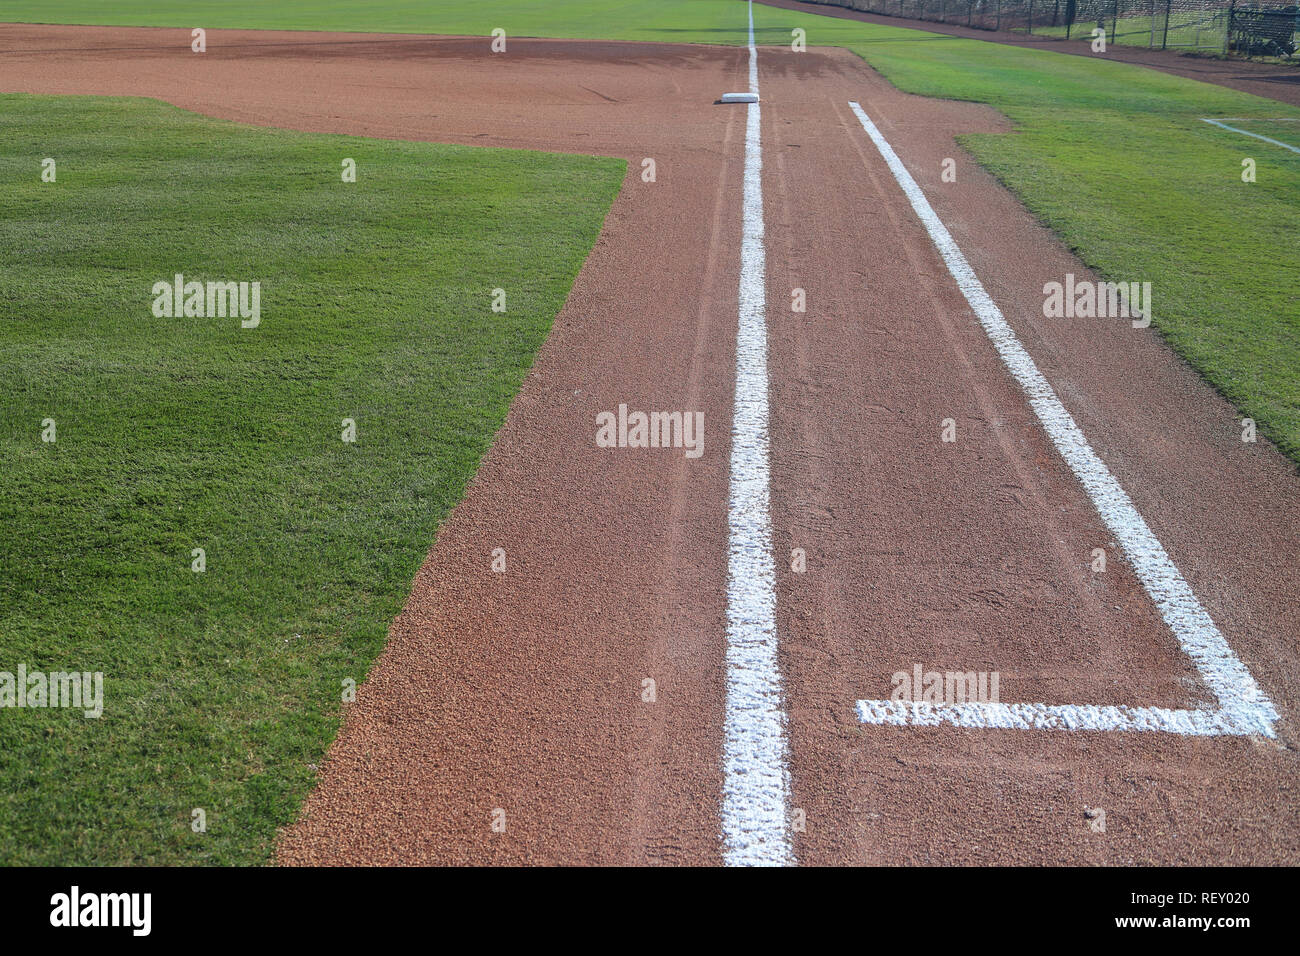 Baseball Feld 1. base coaches Box mit frischem Gras und Kreide Linien Stockfoto